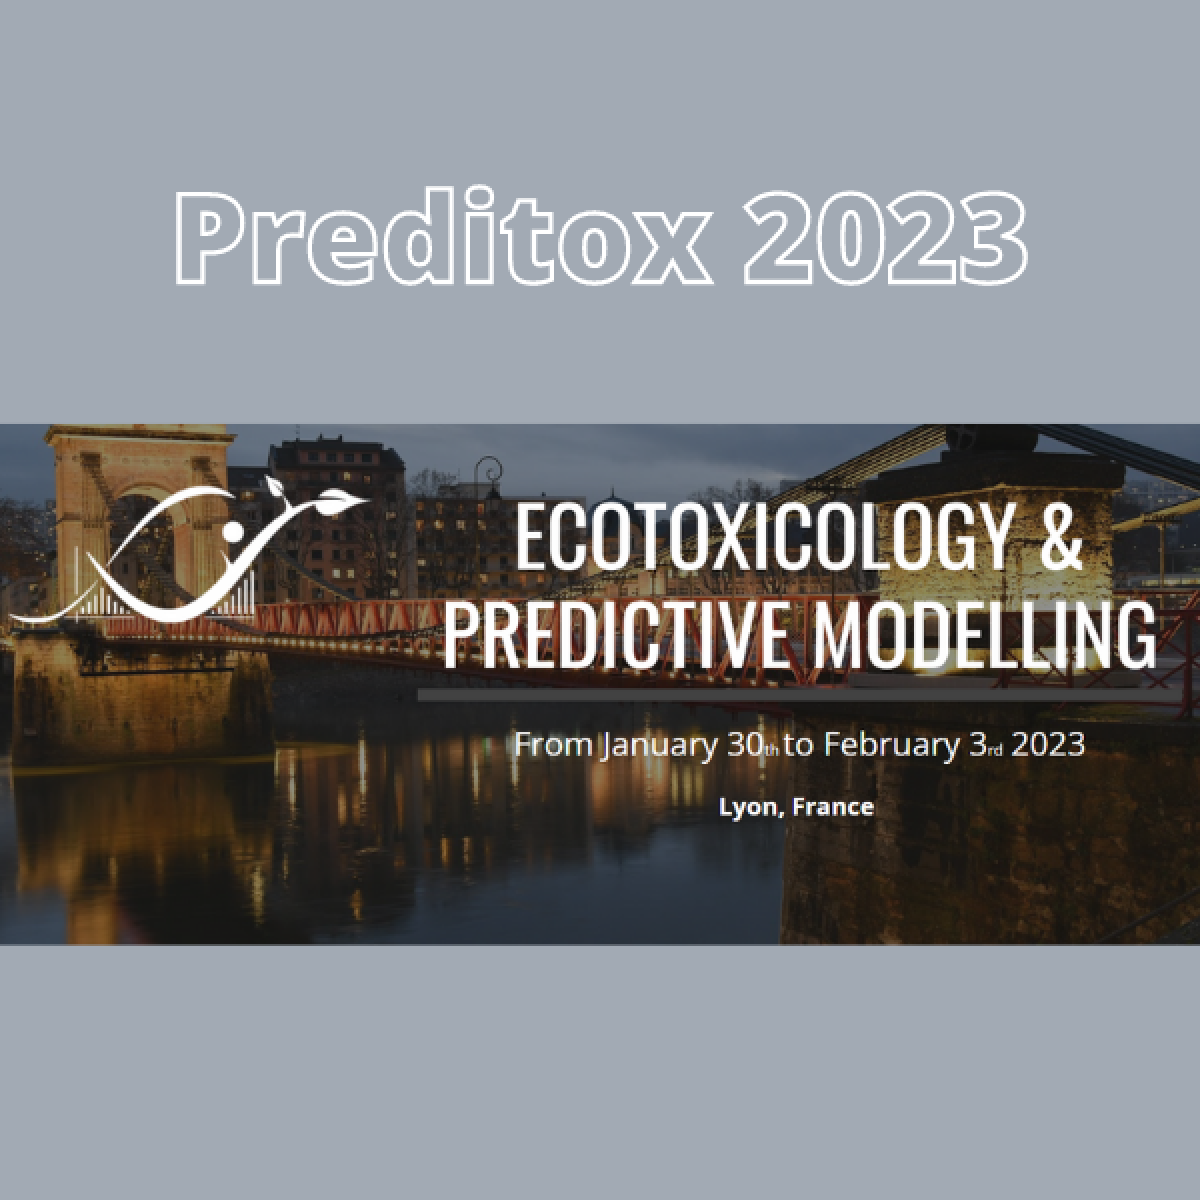 PREDITOX 2023